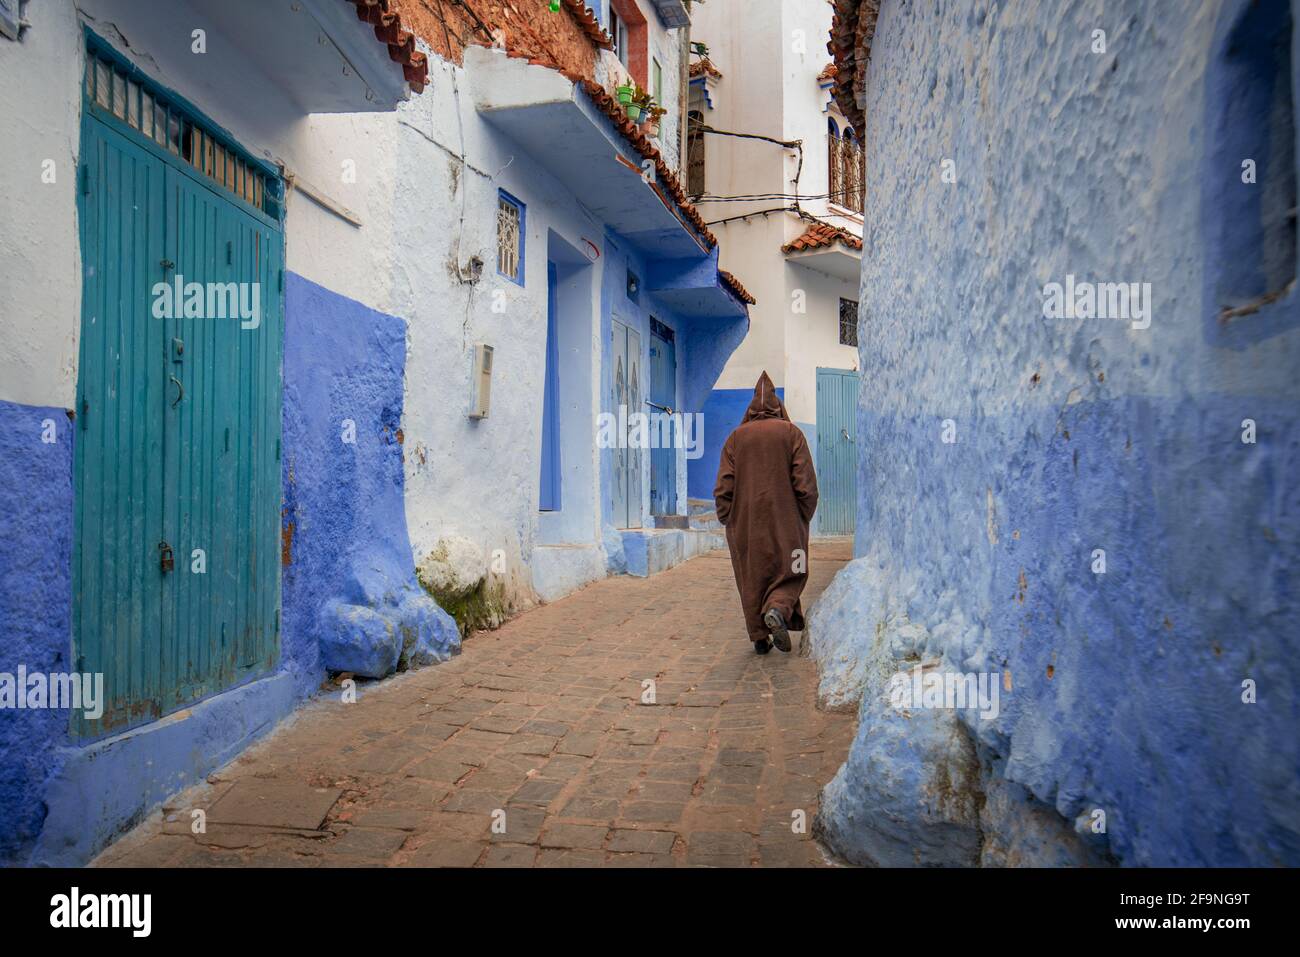 Rue de la ville peinte en bleu Chefchaouen au Maroc.Belle vue sur la ville bleue dans la médina.Architecture et maisons traditionnelles marocaines Banque D'Images